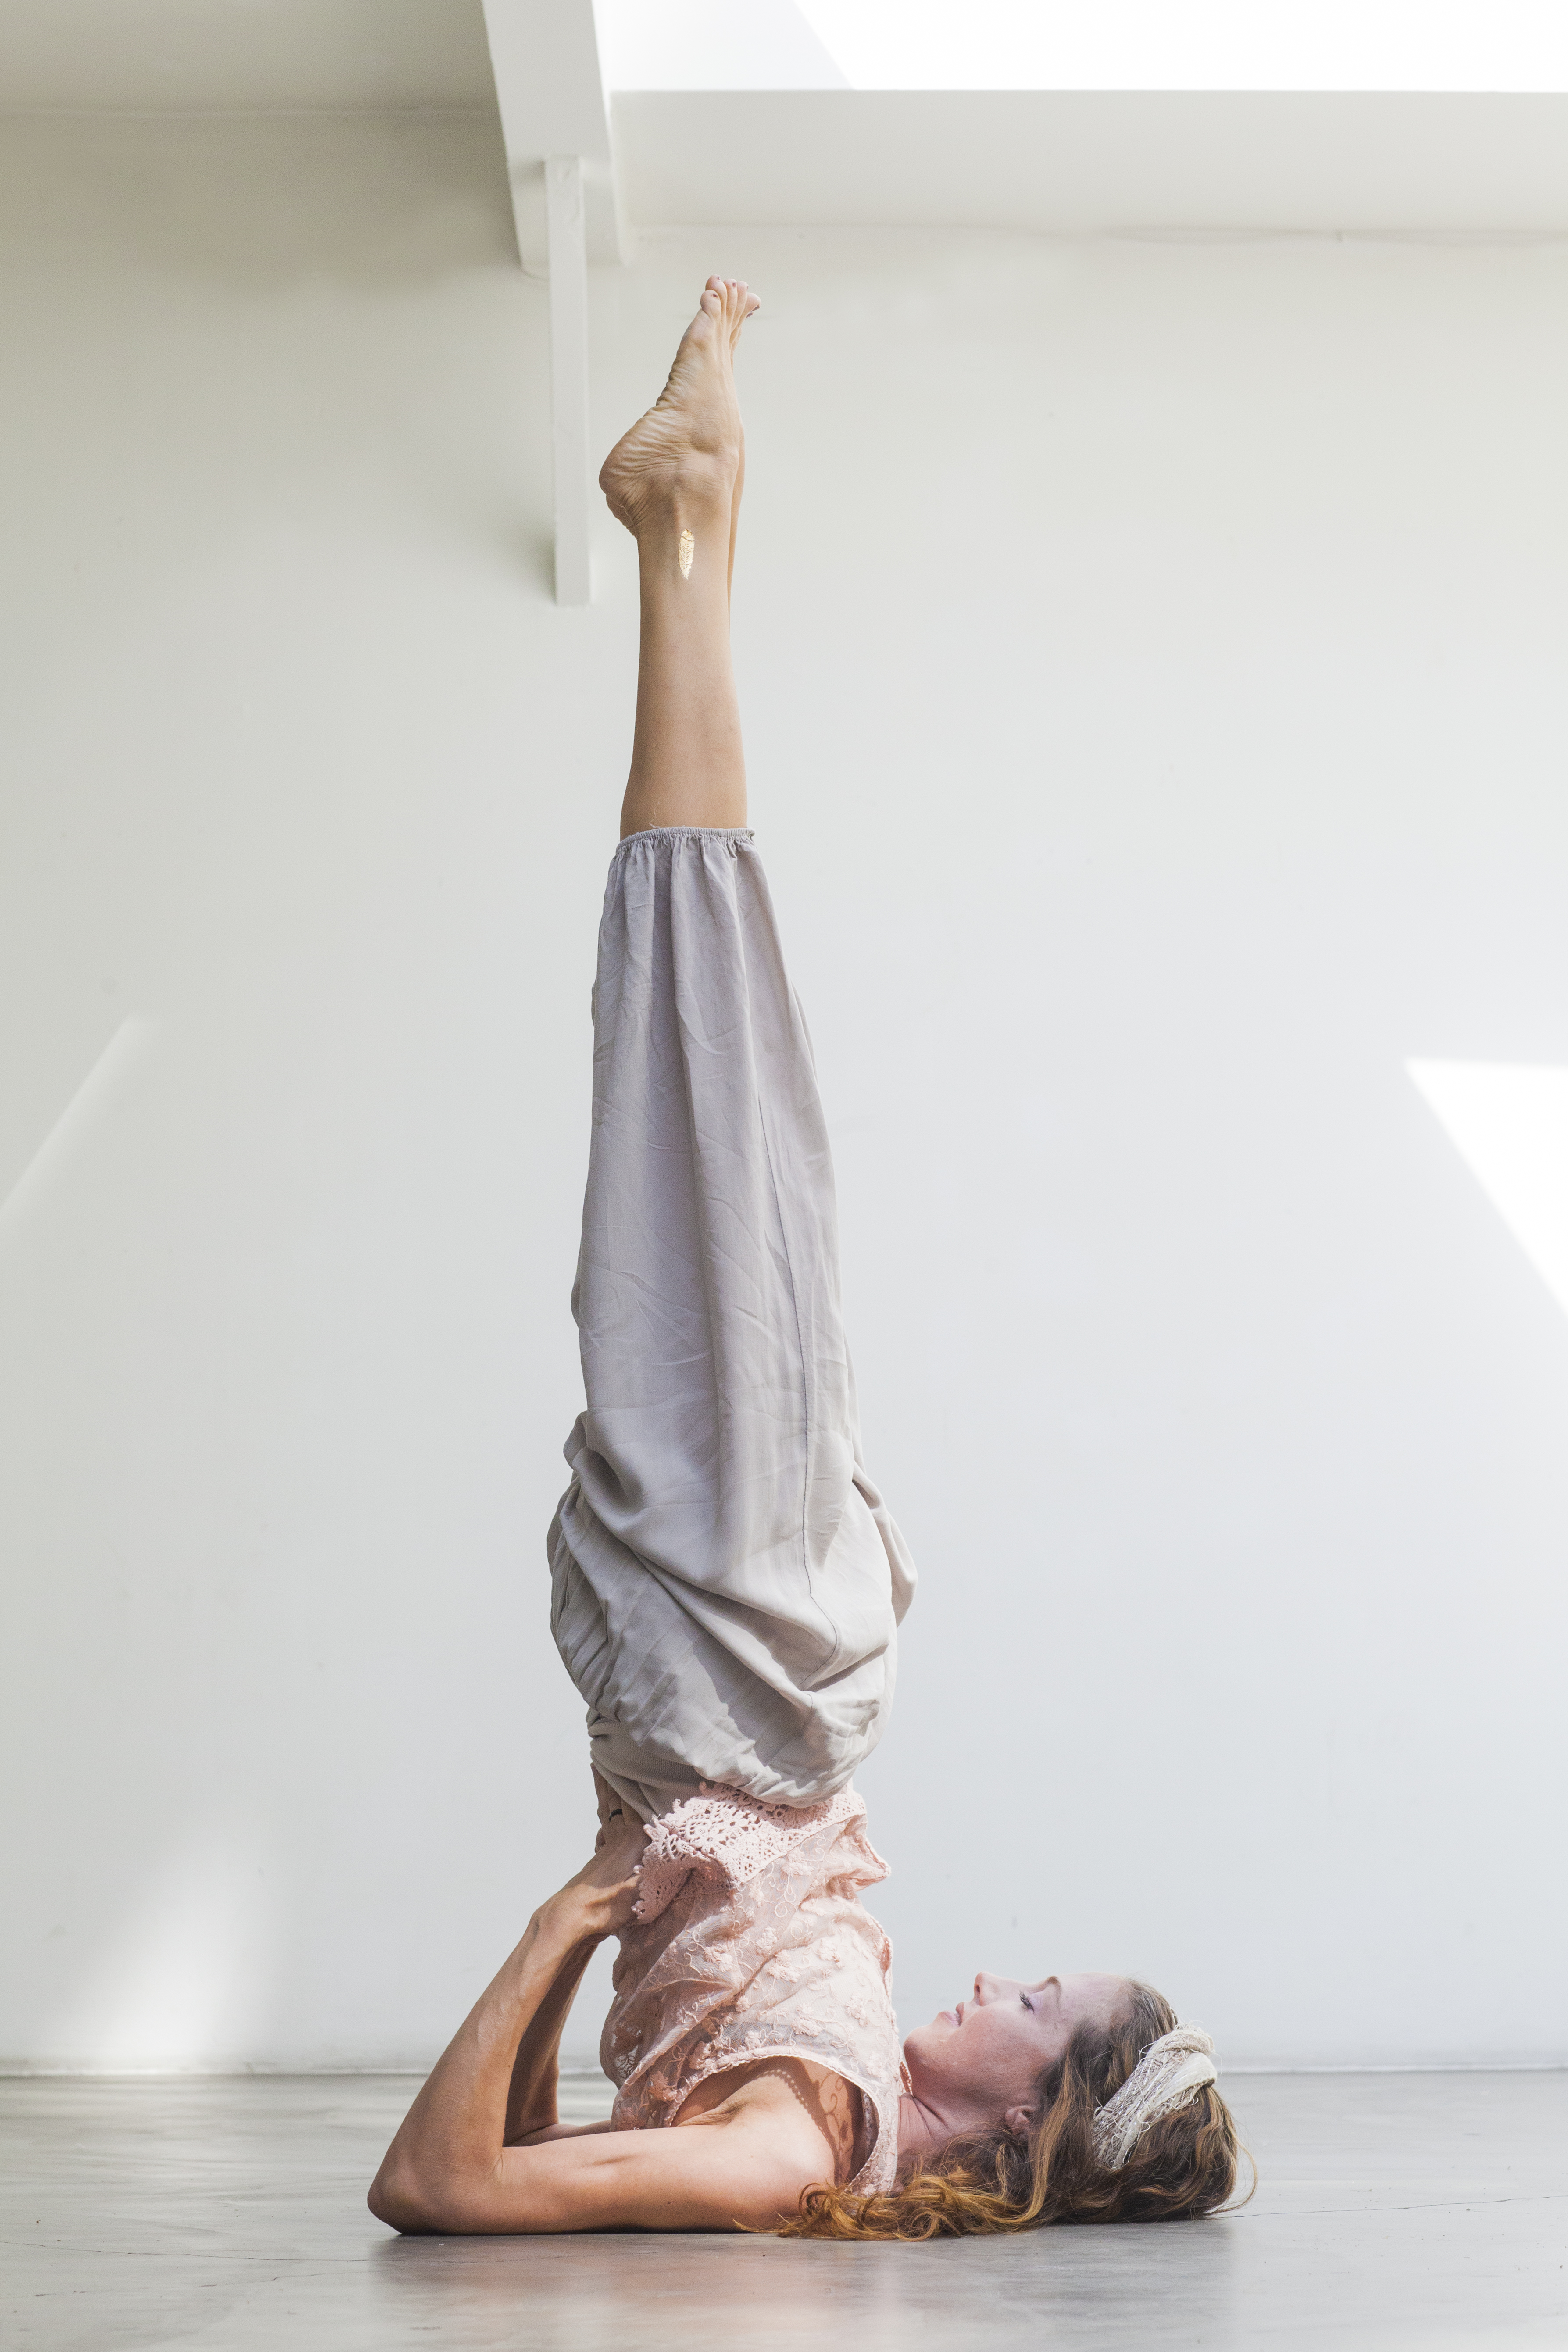 Les trois meilleures postures de yoga pour gagner en force selon